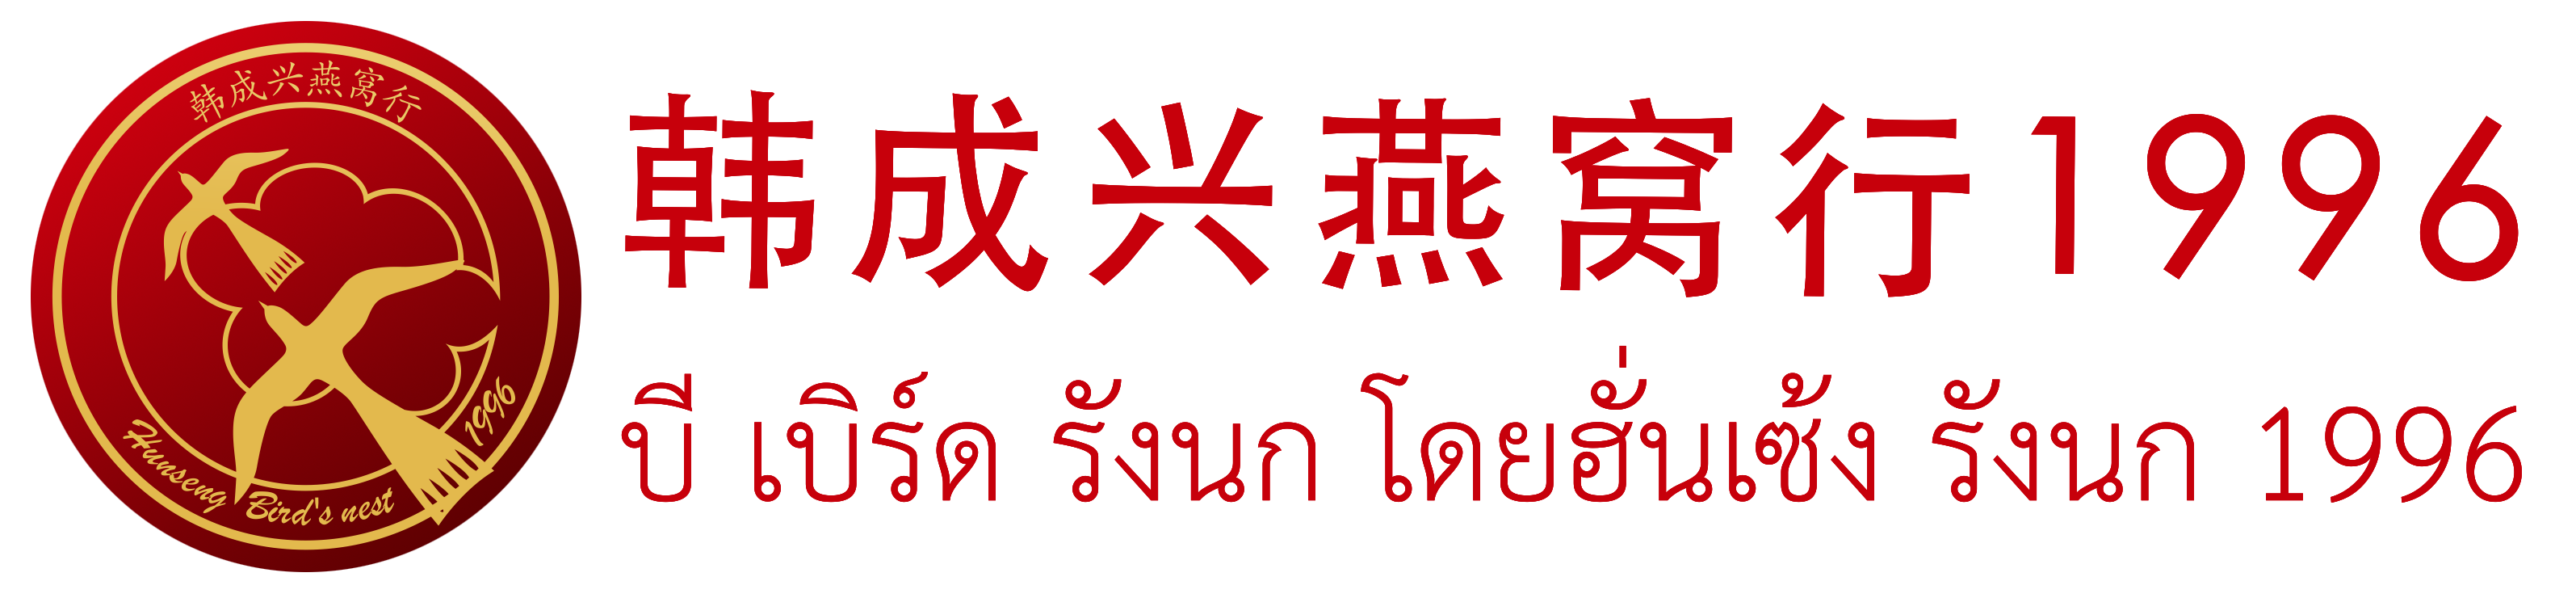 韩成兴燕窝行官网-创立于1996年泰国国礼燕窝品牌